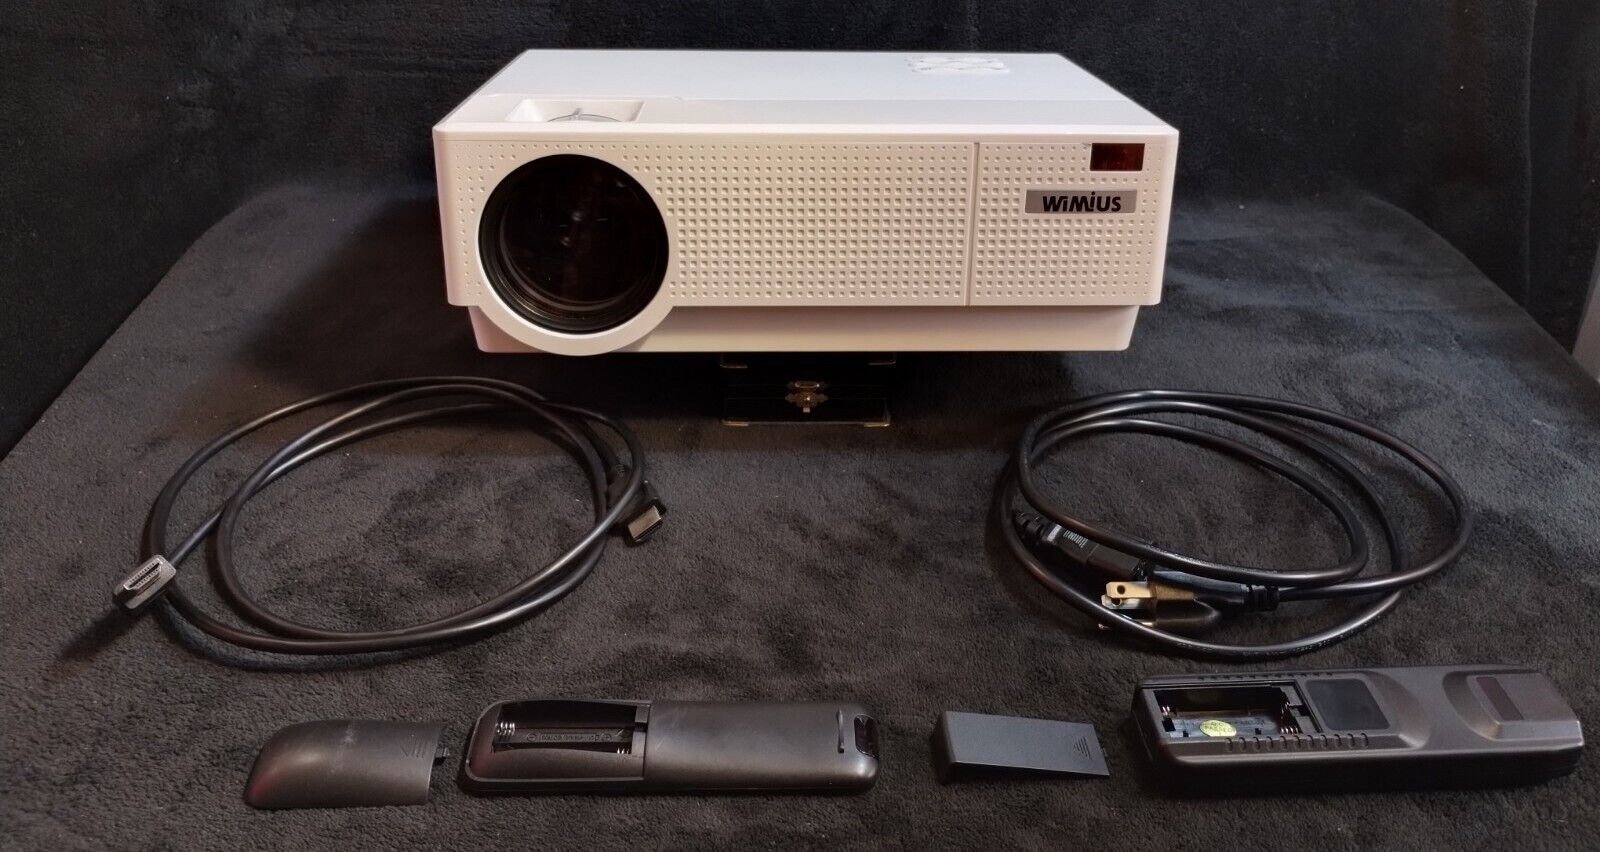 Video Projector WiMiUS Model P28 AC 110V-240V, 50/60Hz HDMI Compatible 